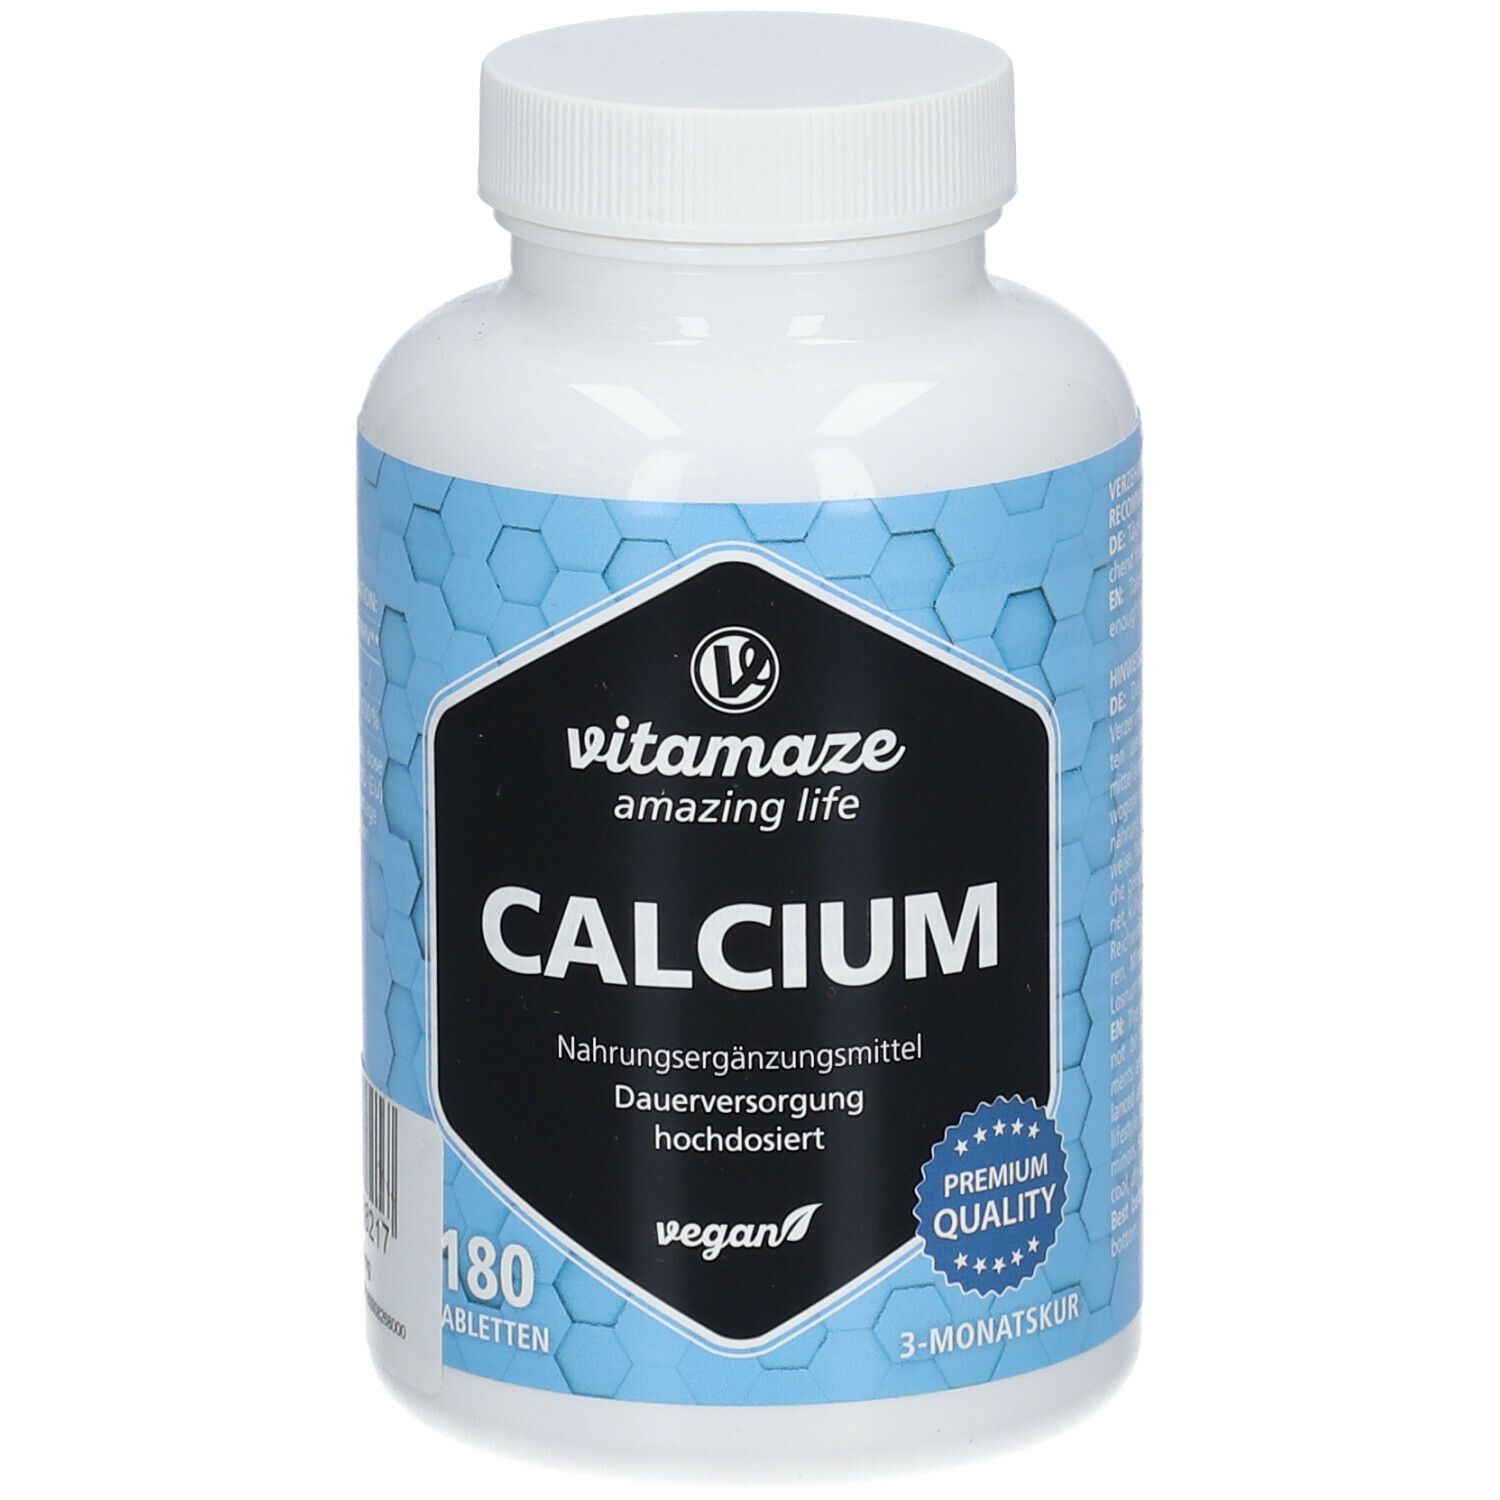 CALCIUM 400 mg vegan